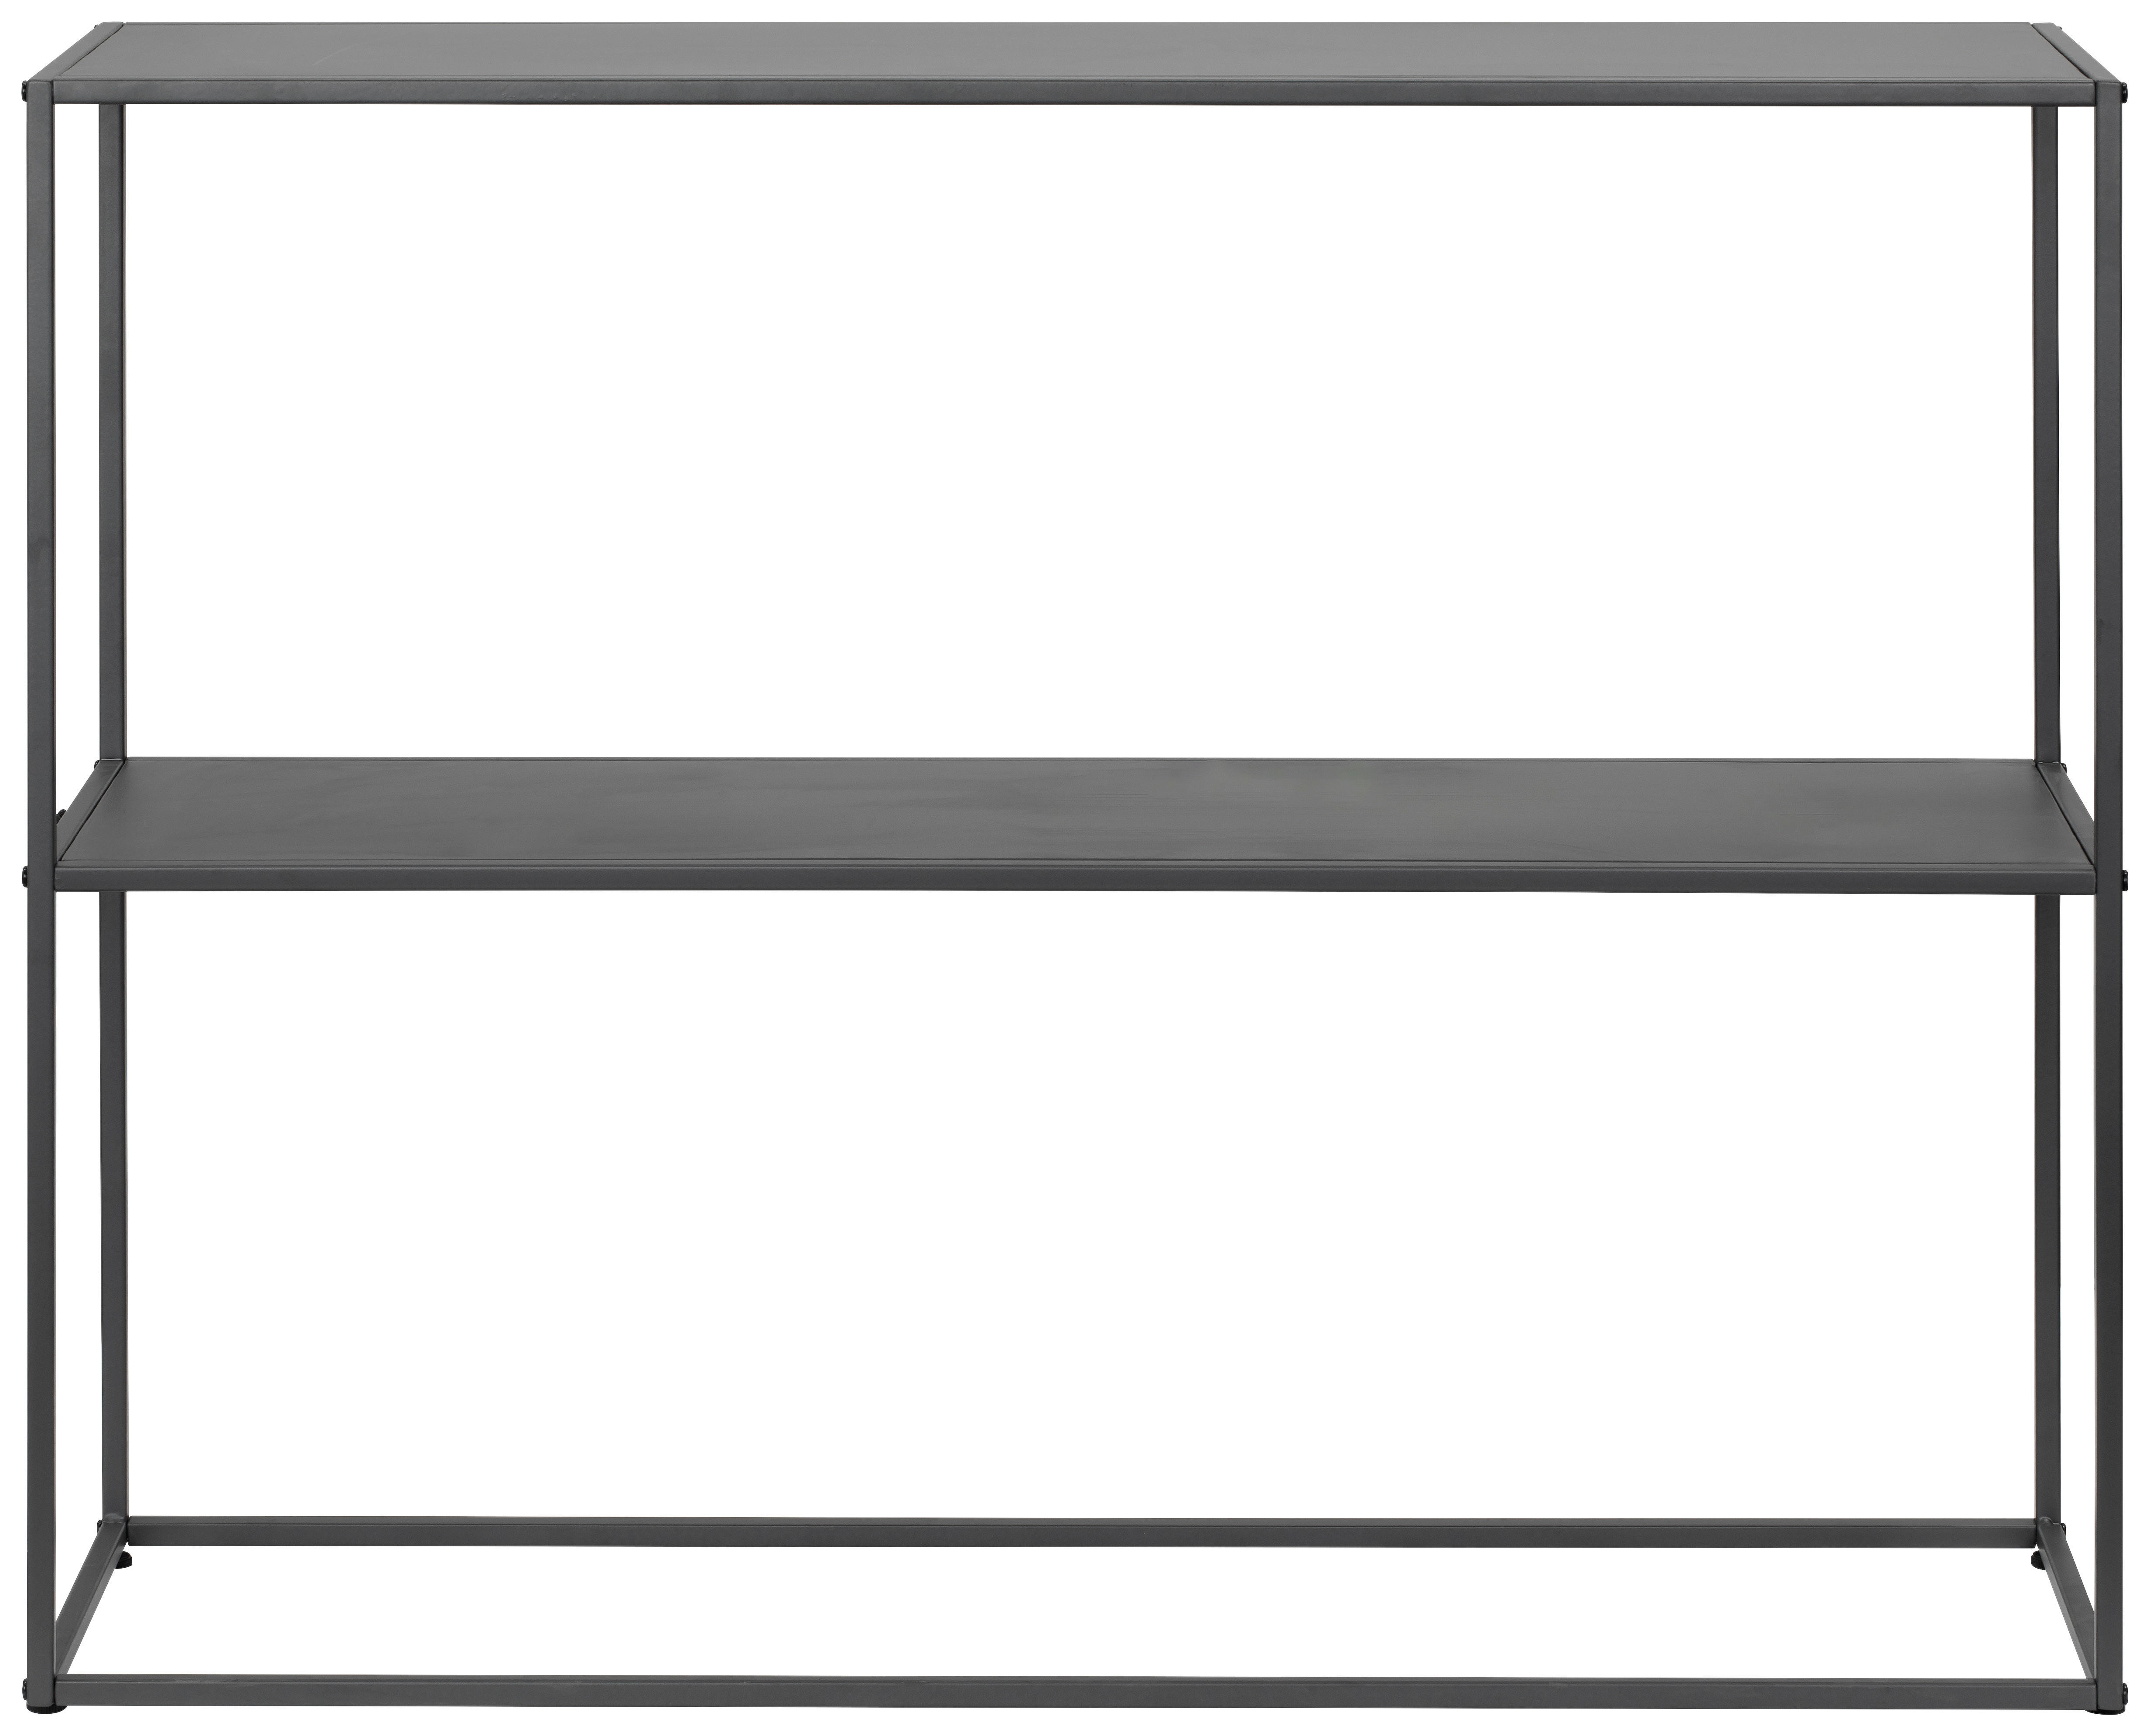 REGAL  100/79/29 cm Grau  - Grau, MODERN, Metall (100/79/29cm) - PBJ